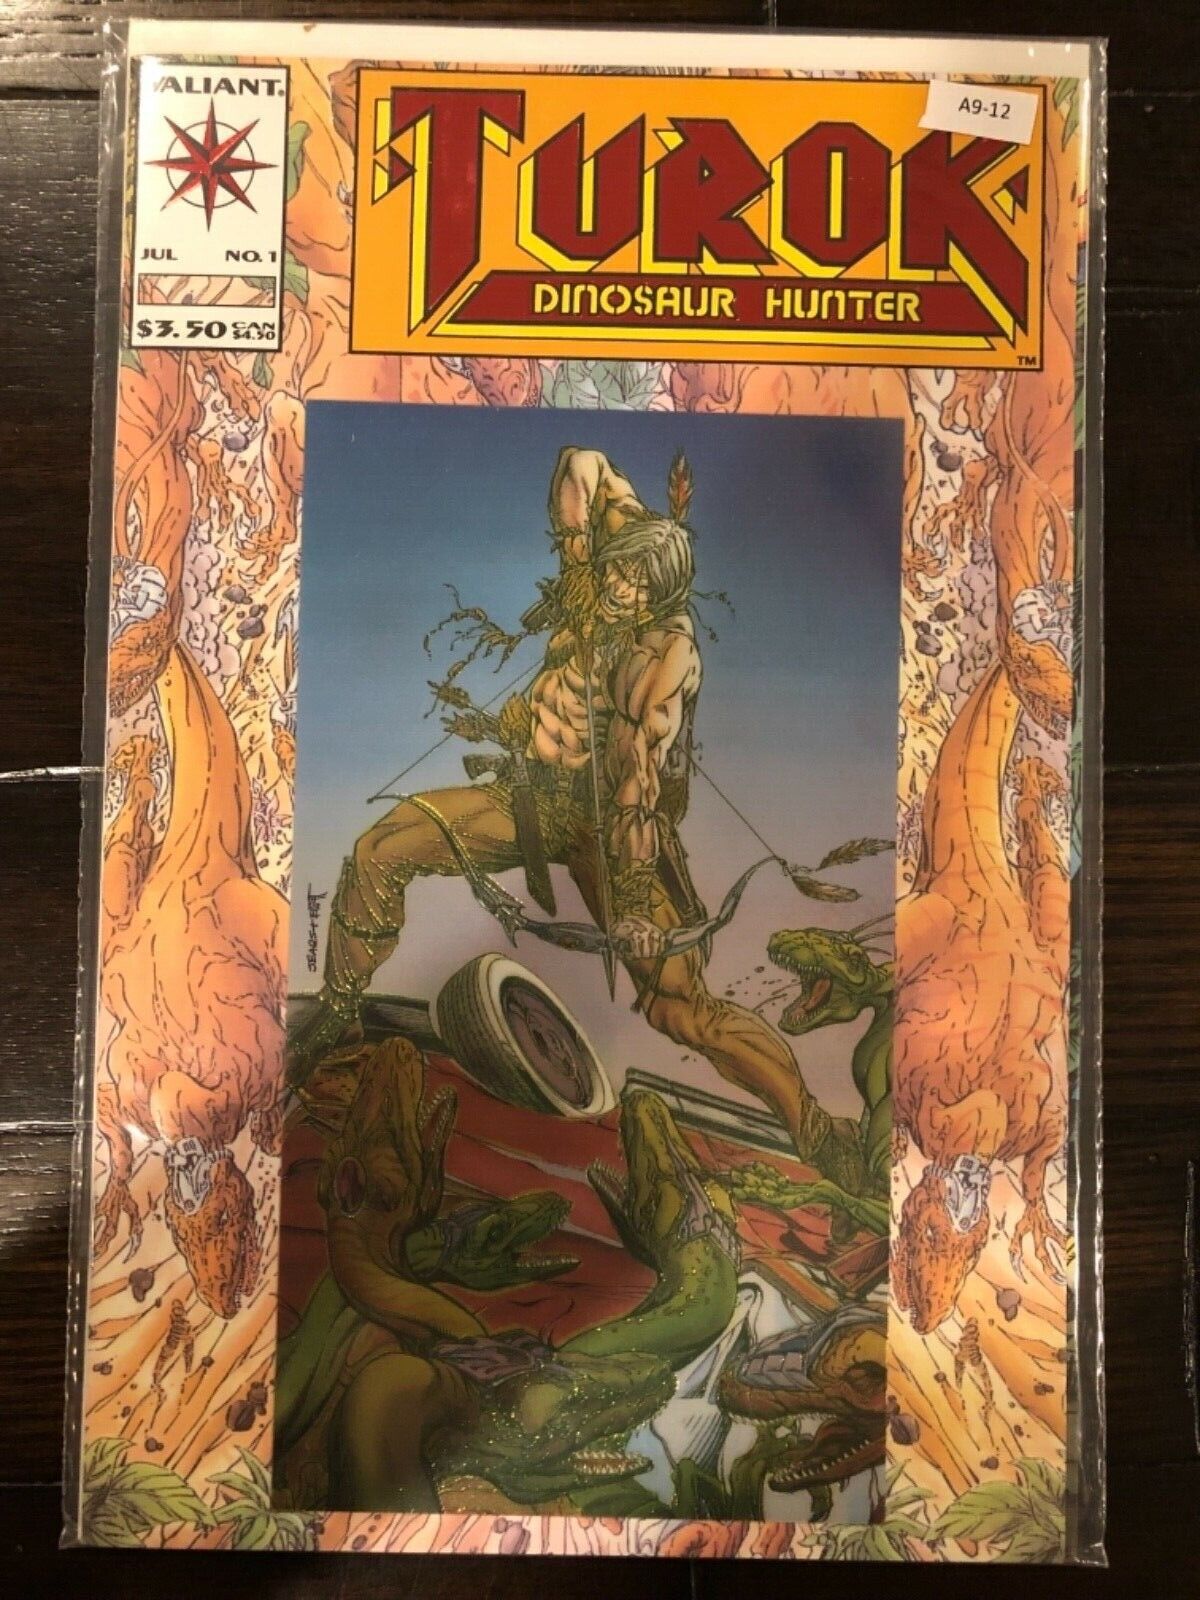 Turok: Dinosaur Hunter vol. 1 #1 Grade 9.9/10 Gem Mint 1st solo Valiant Comic